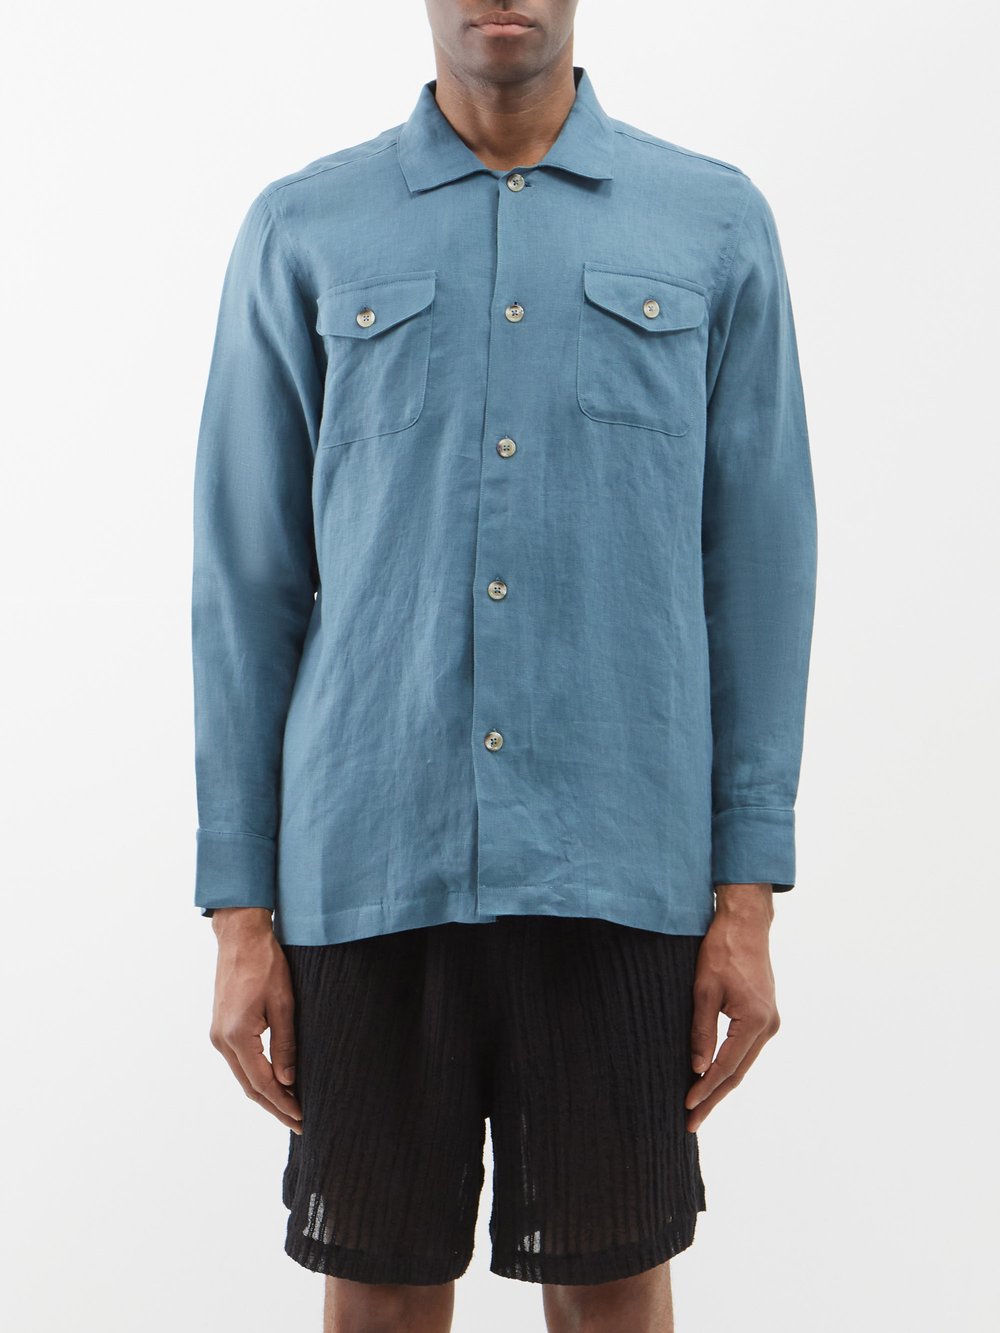 Льняная рубашка с накладными карманами The Resort Co, синий